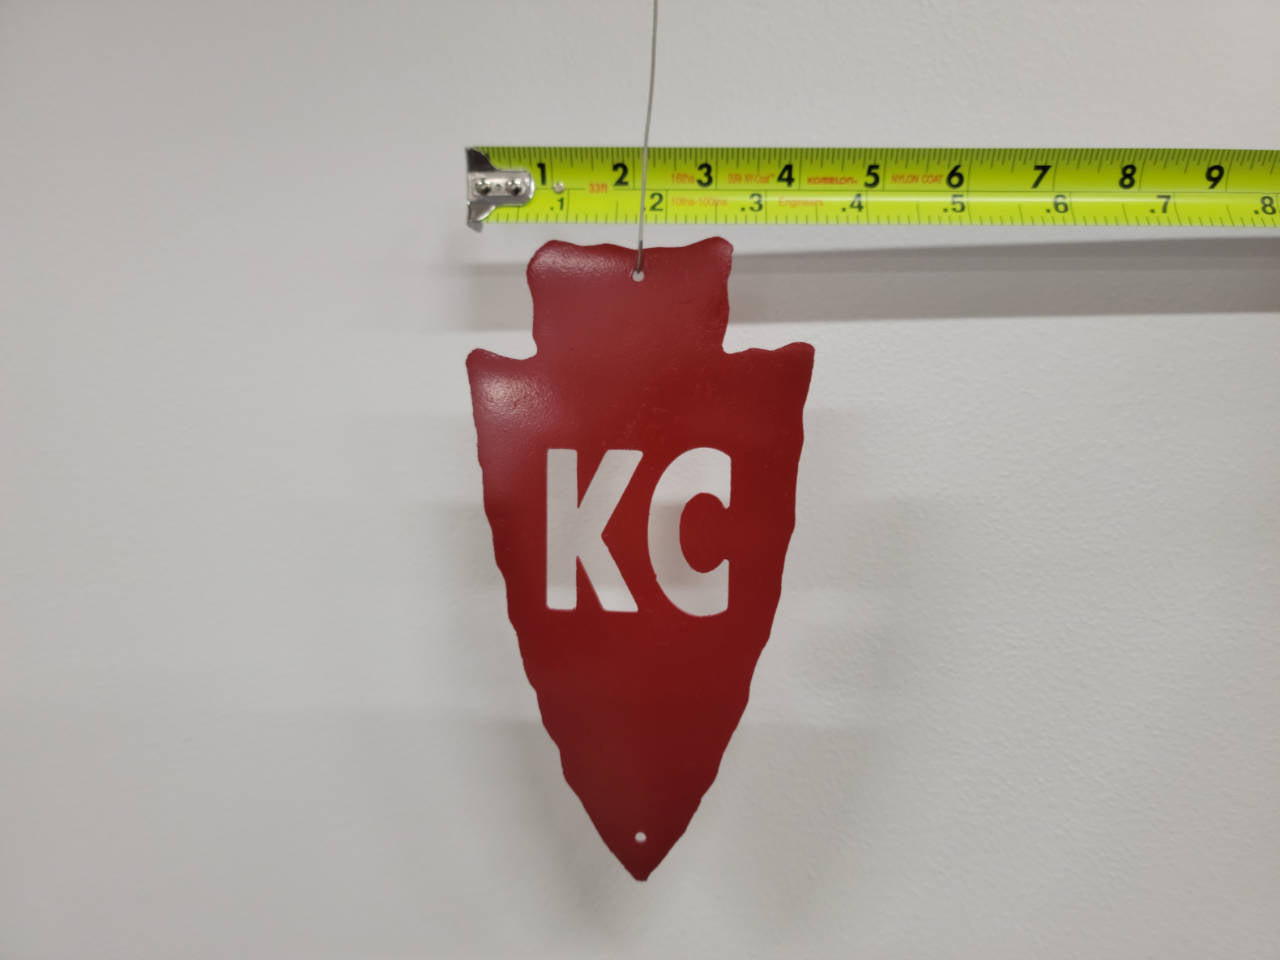 KC Arrowhead Sign / Ornament